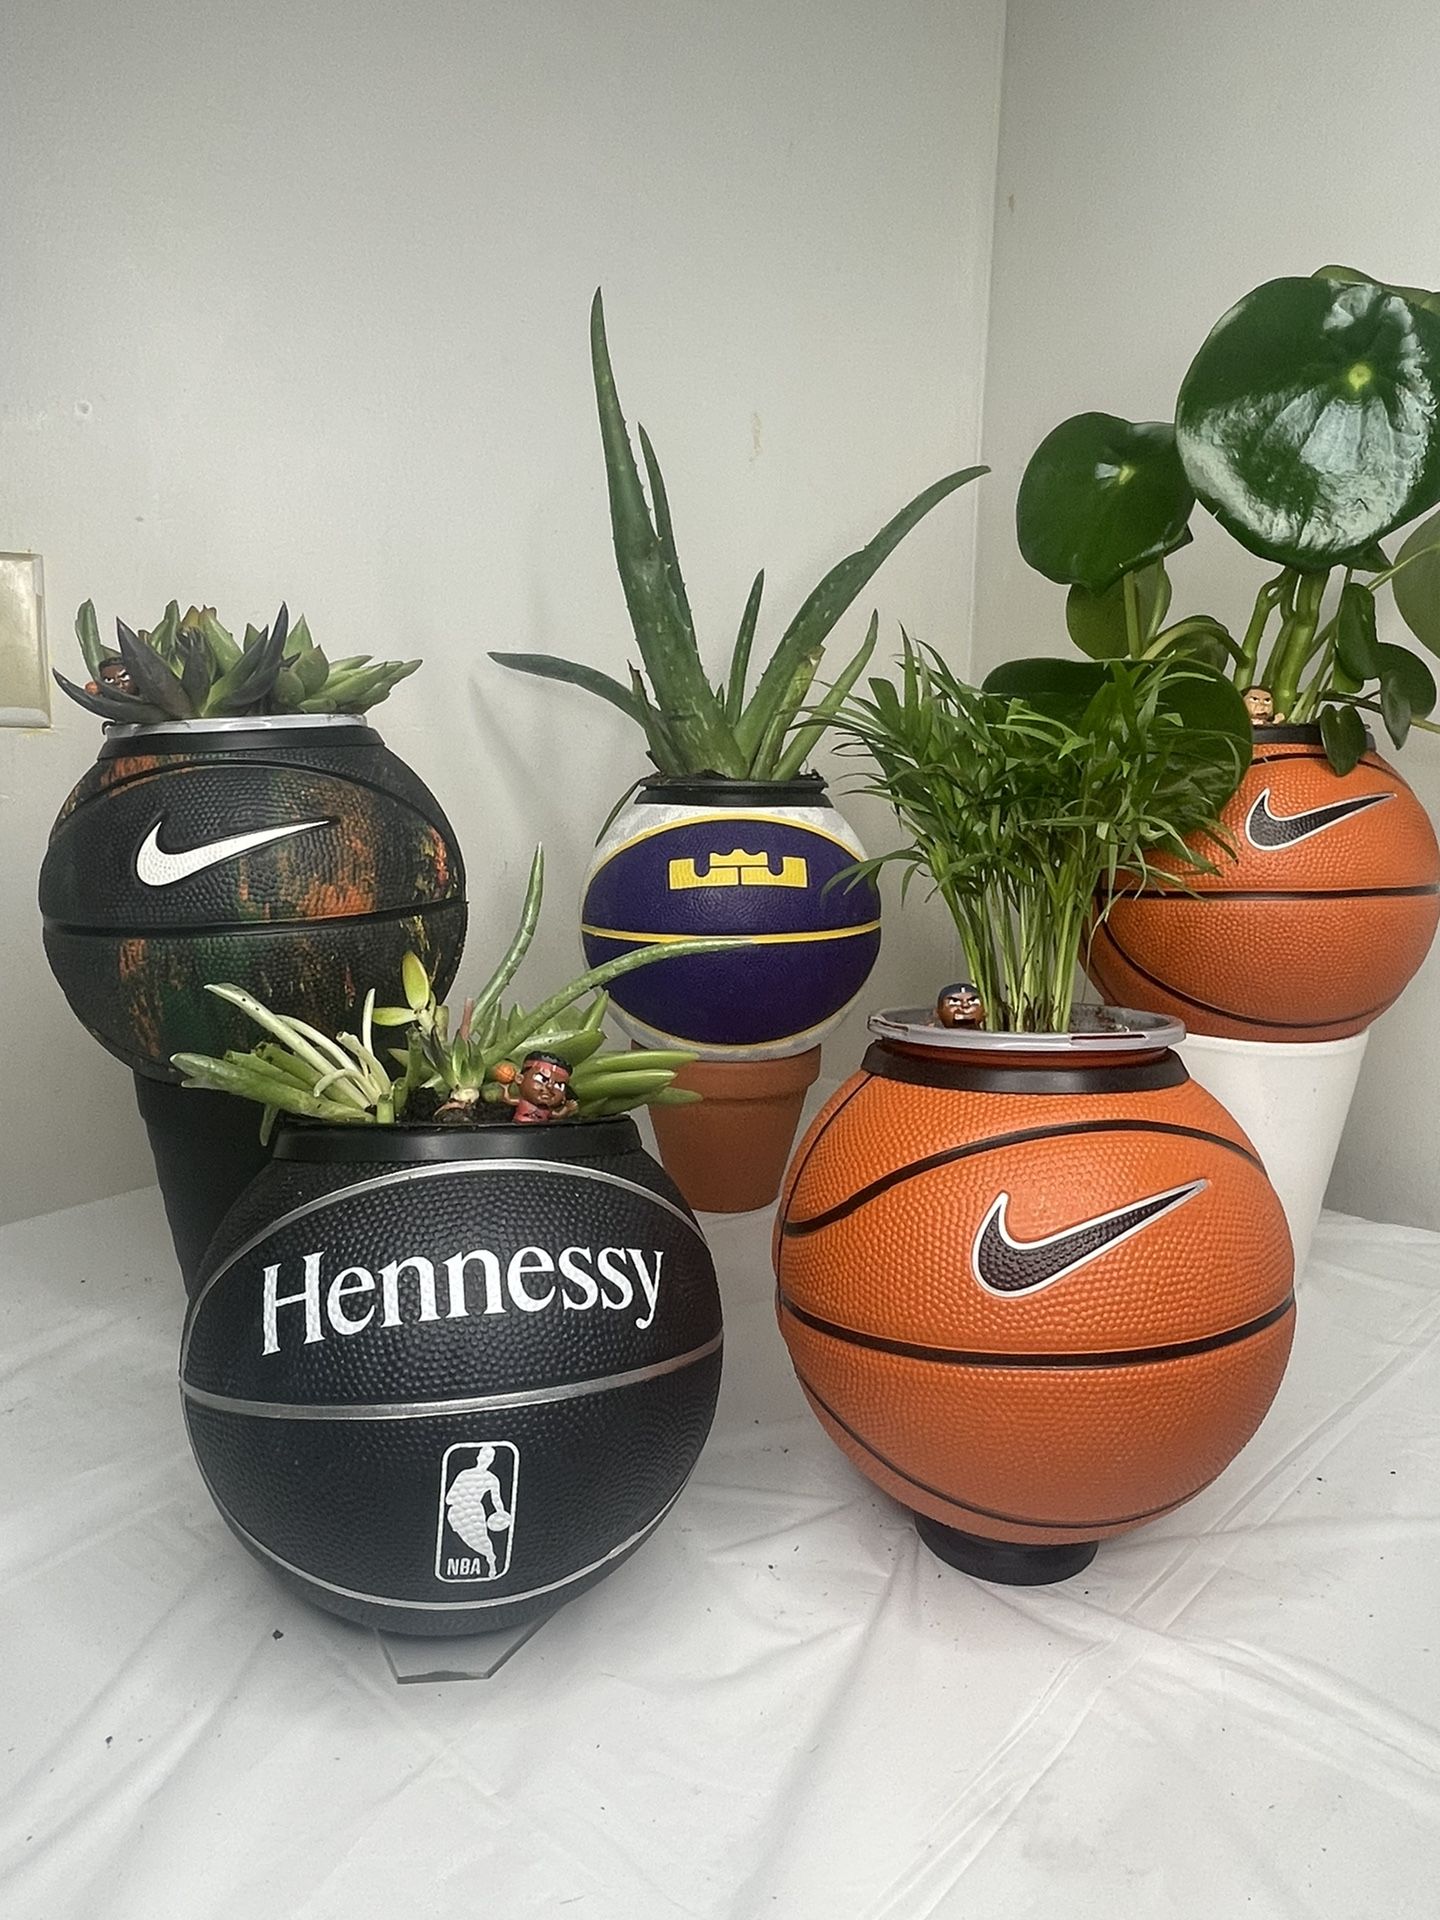 Basketball Planters